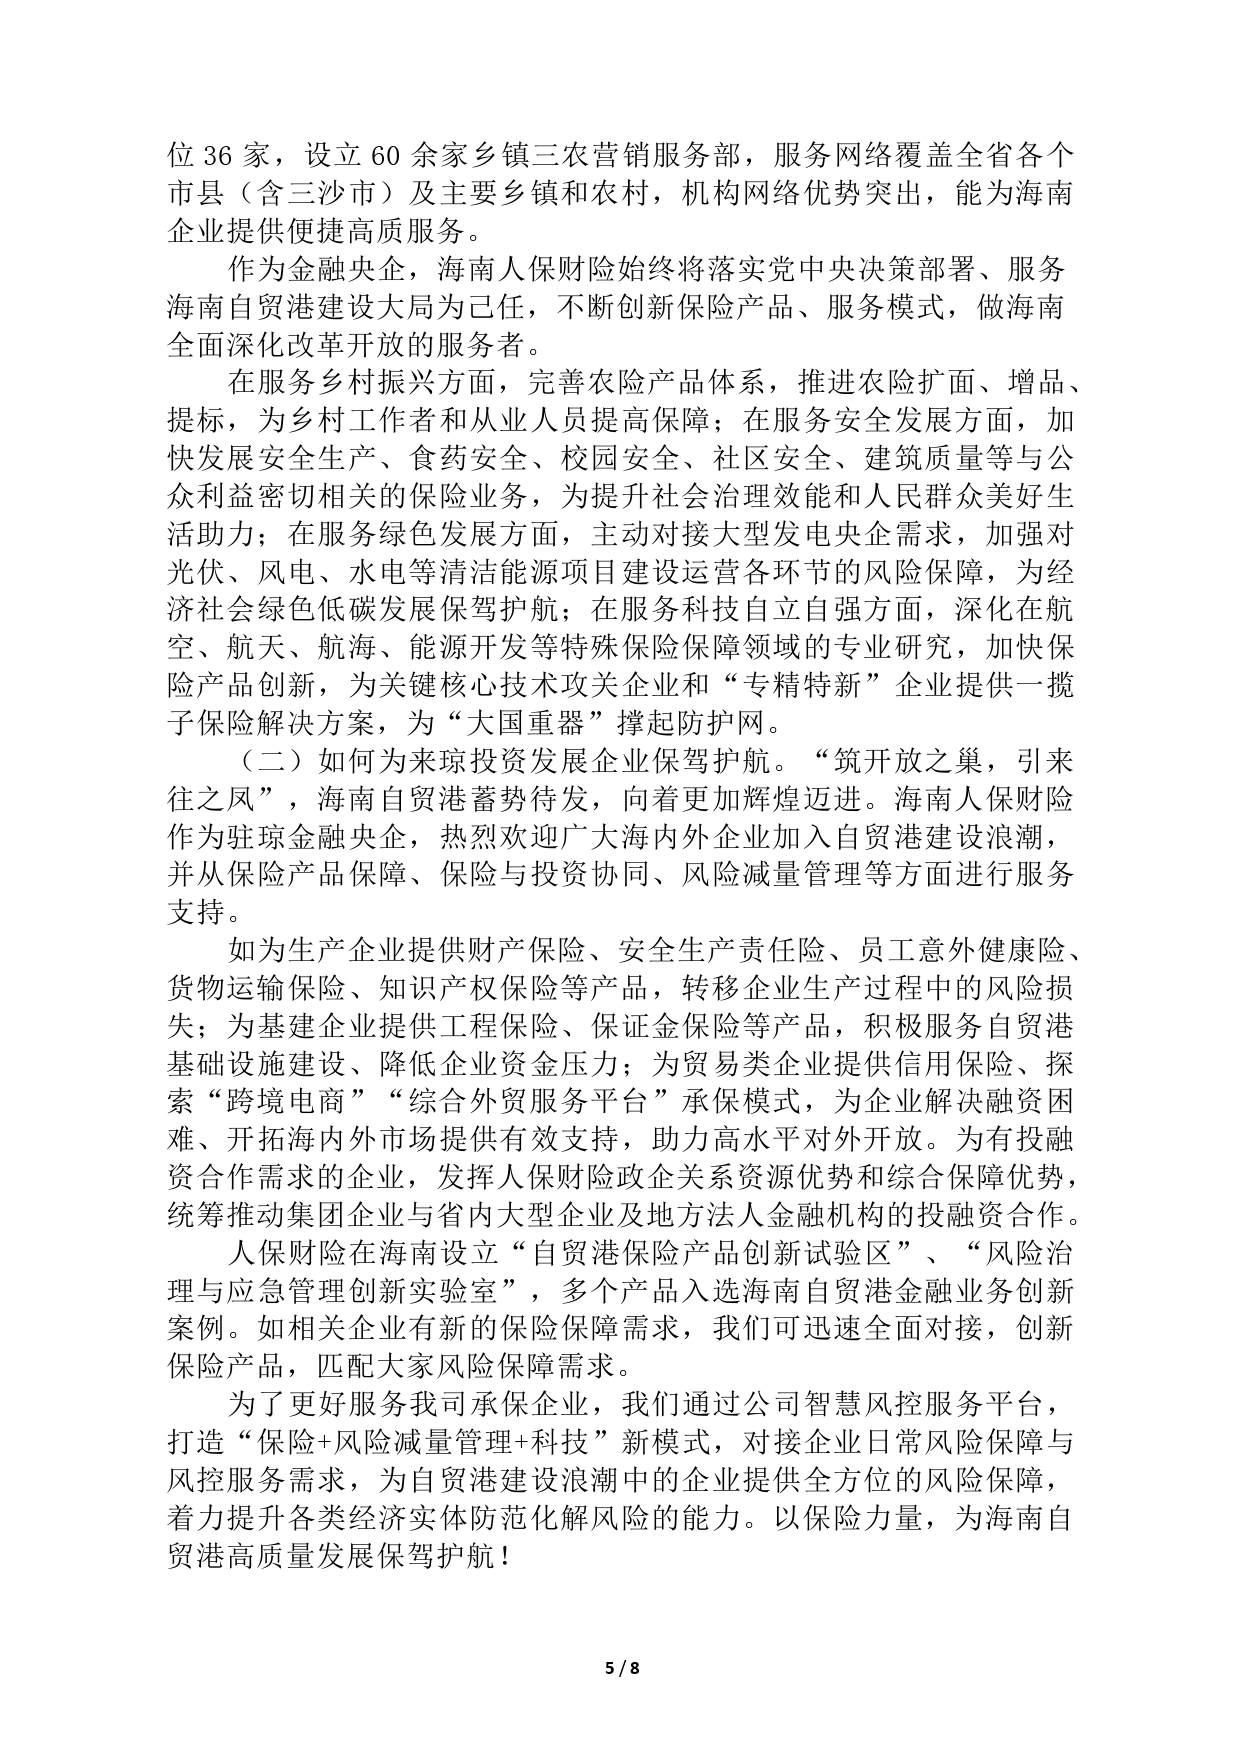 汇聚中外投资资源 融升金融服务活力(3)(1)_page-0005.jpg